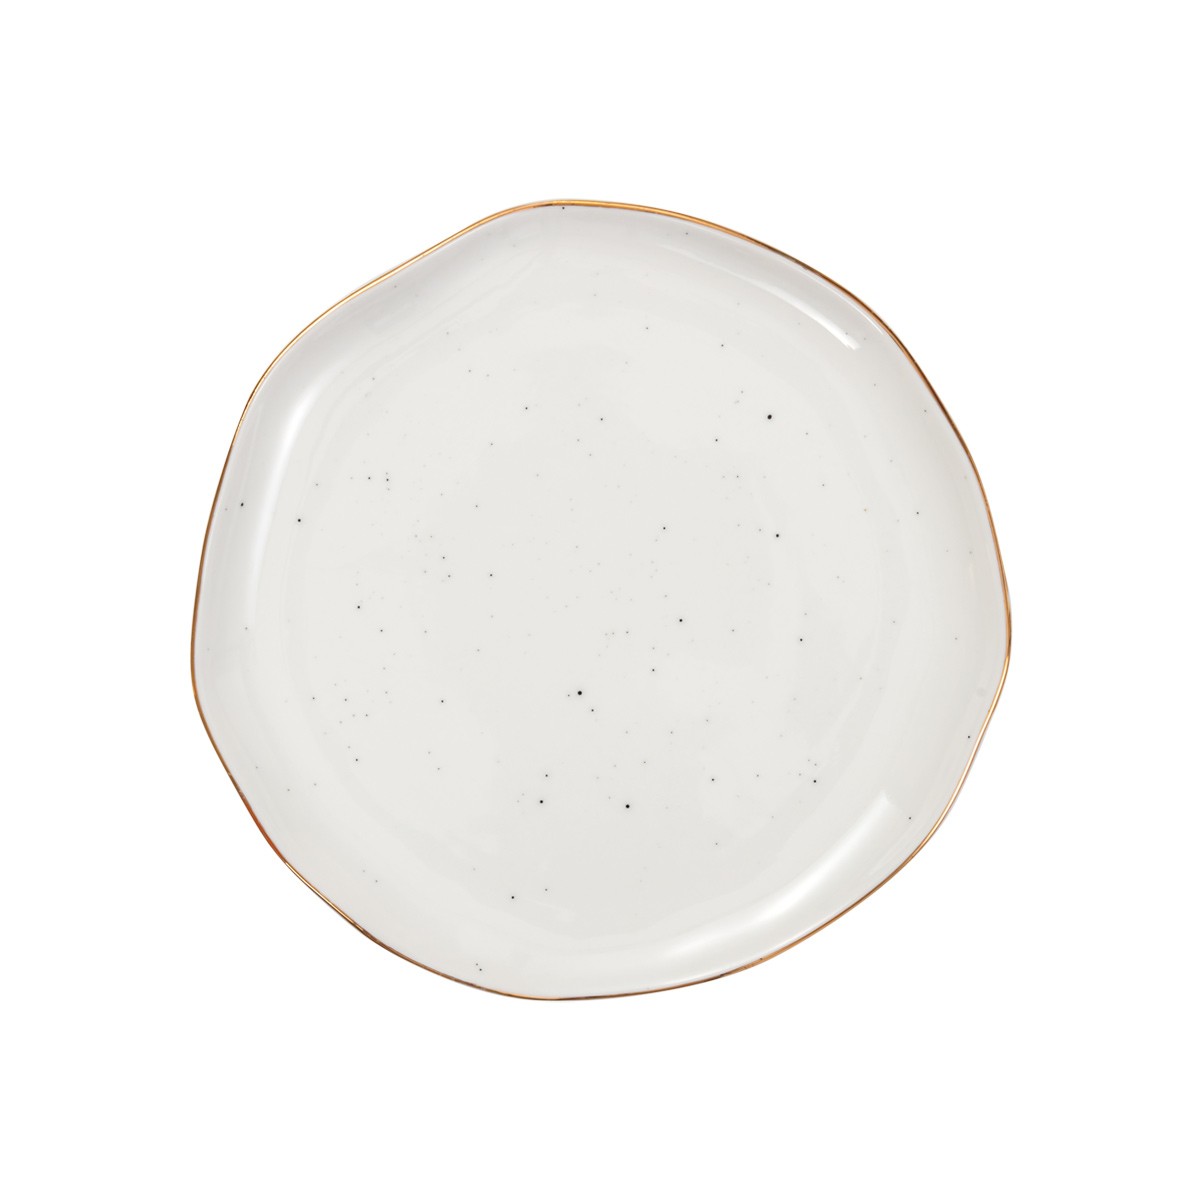 Talerz deserowy CHARMANT ¤ 19 cm, biały